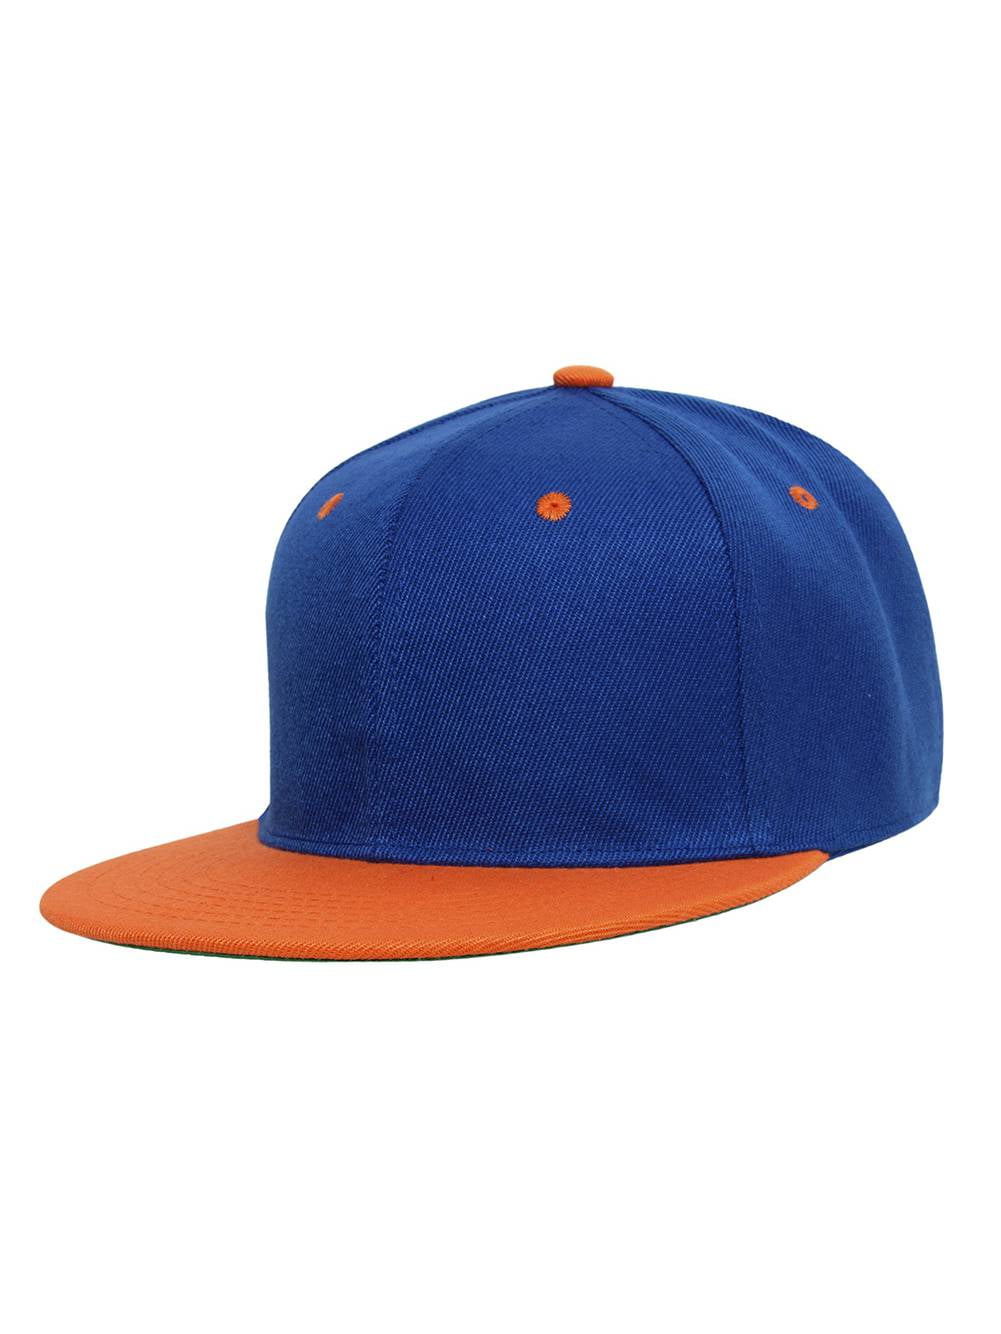 The Snapback Flatbill - Orange on Blue